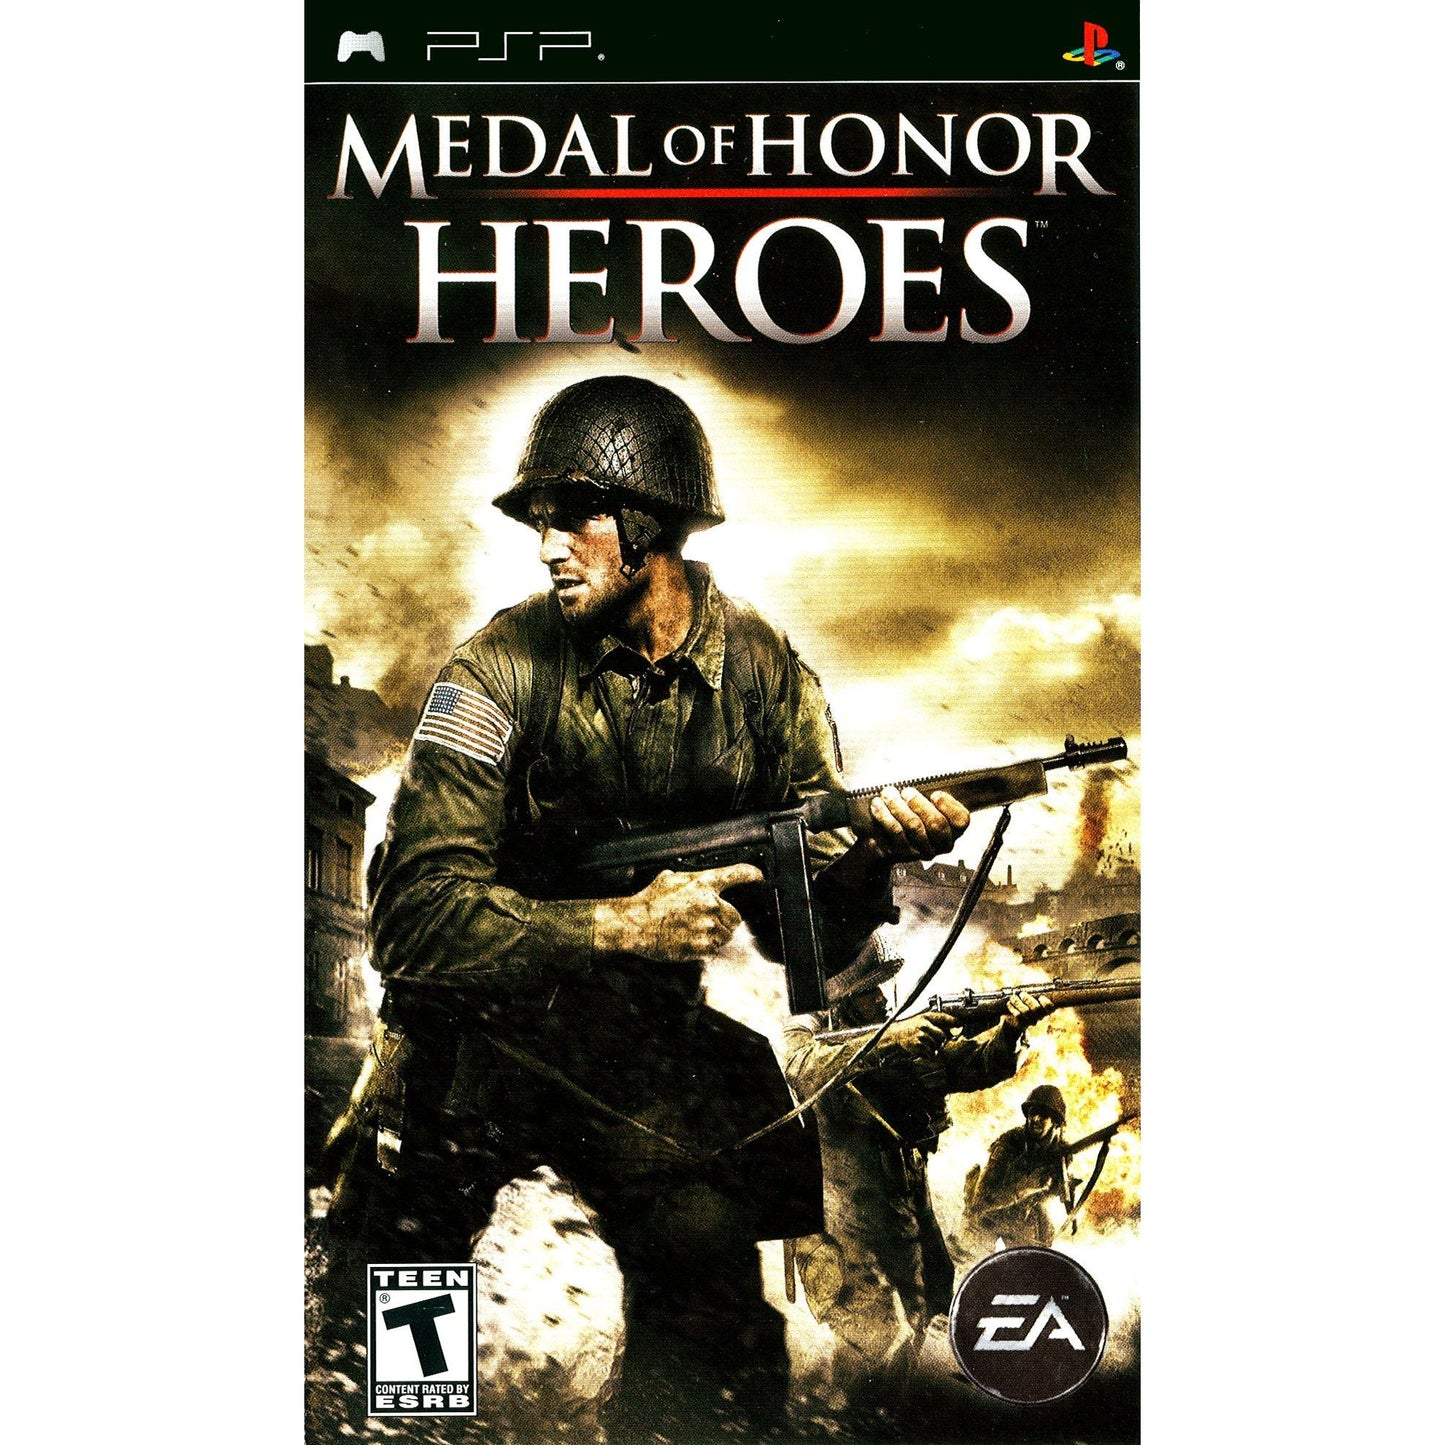 MEDAL OF HONOR HEROES (used)